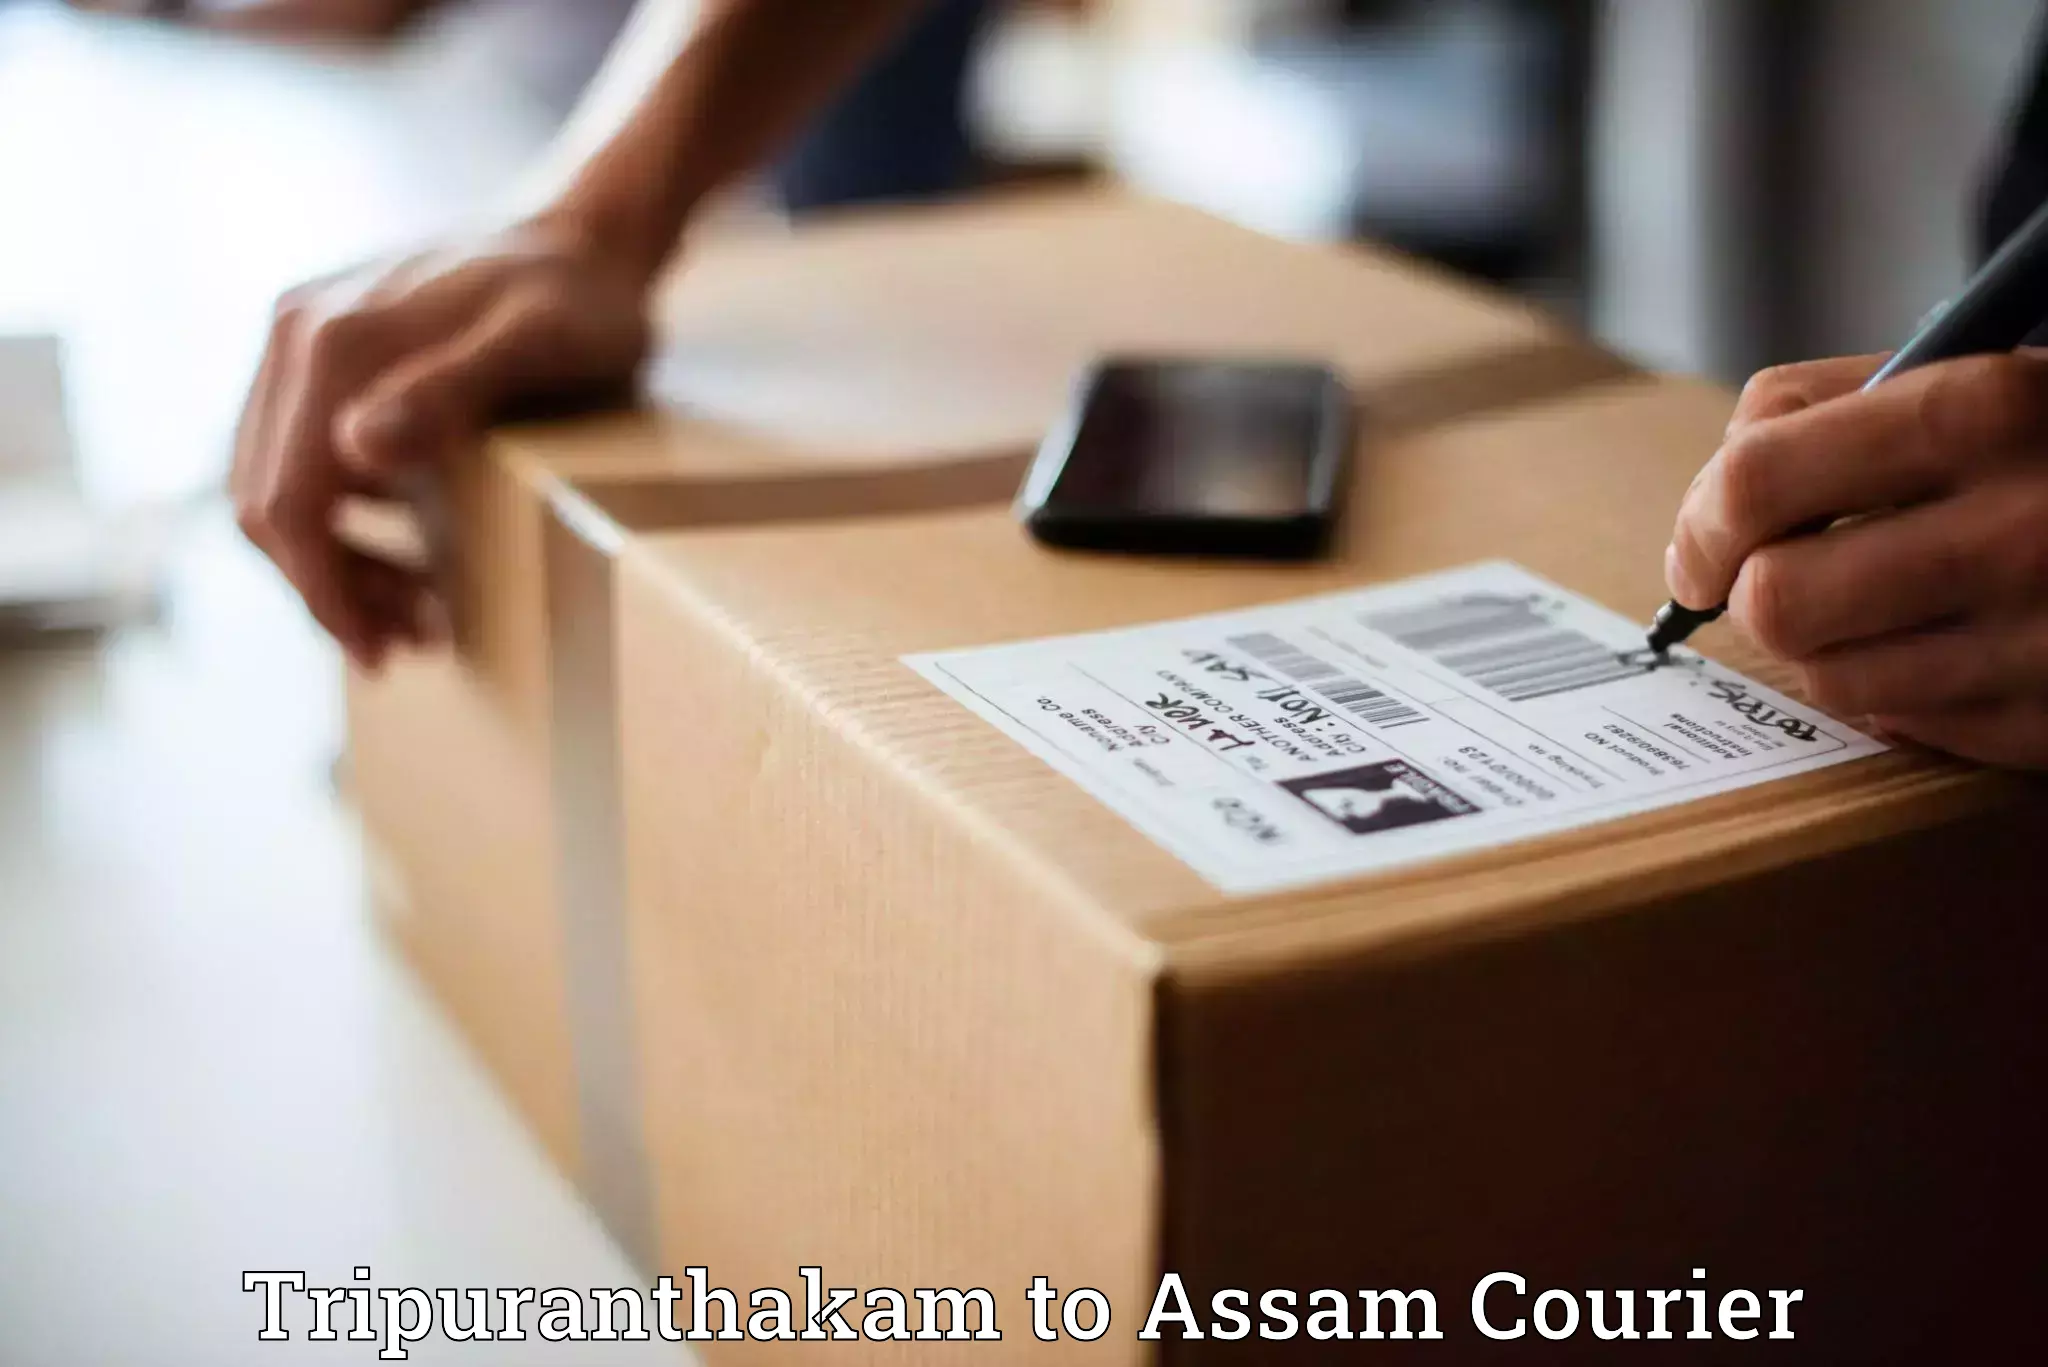 Smart parcel delivery in Tripuranthakam to Sadiya